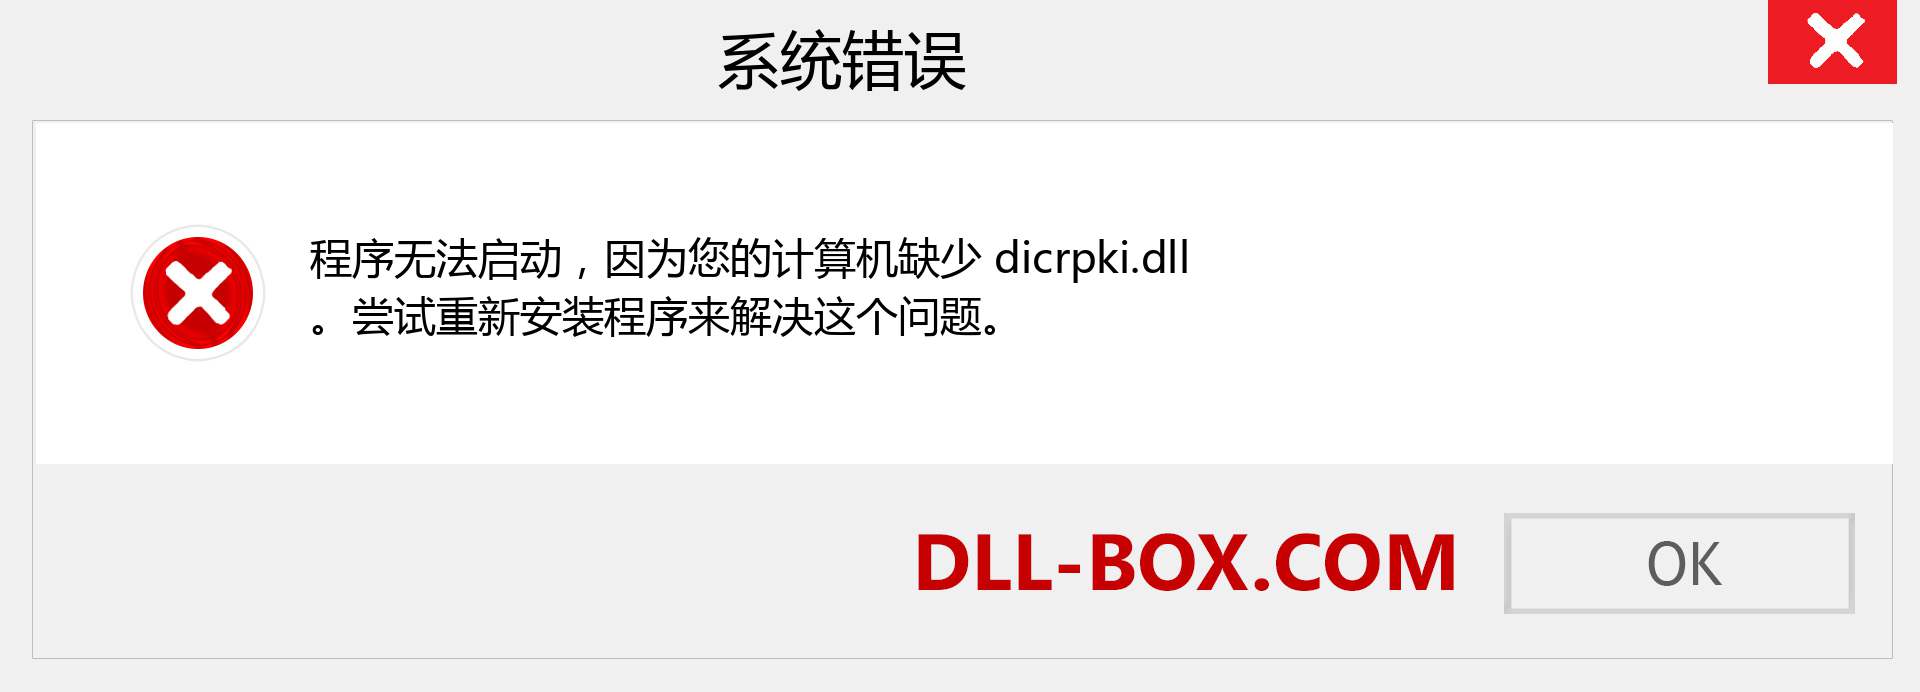 dicrpki.dll 文件丢失？。 适用于 Windows 7、8、10 的下载 - 修复 Windows、照片、图像上的 dicrpki dll 丢失错误